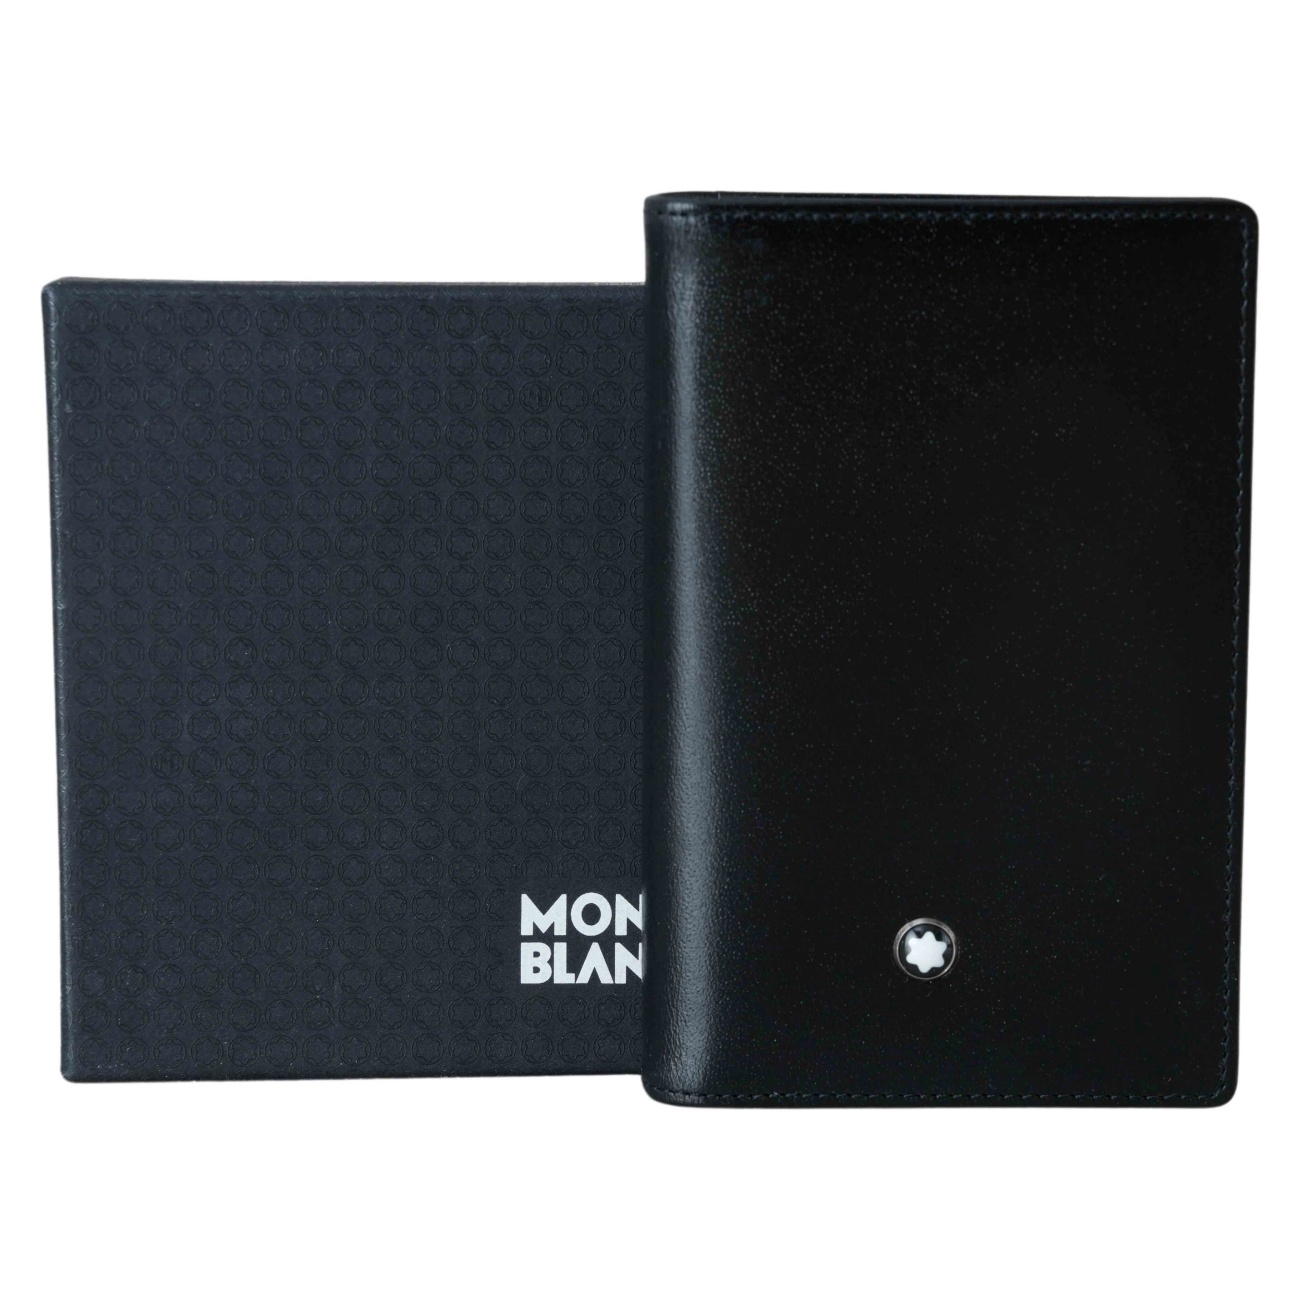 MONTBLANC(USED)몽블랑 카드지갑